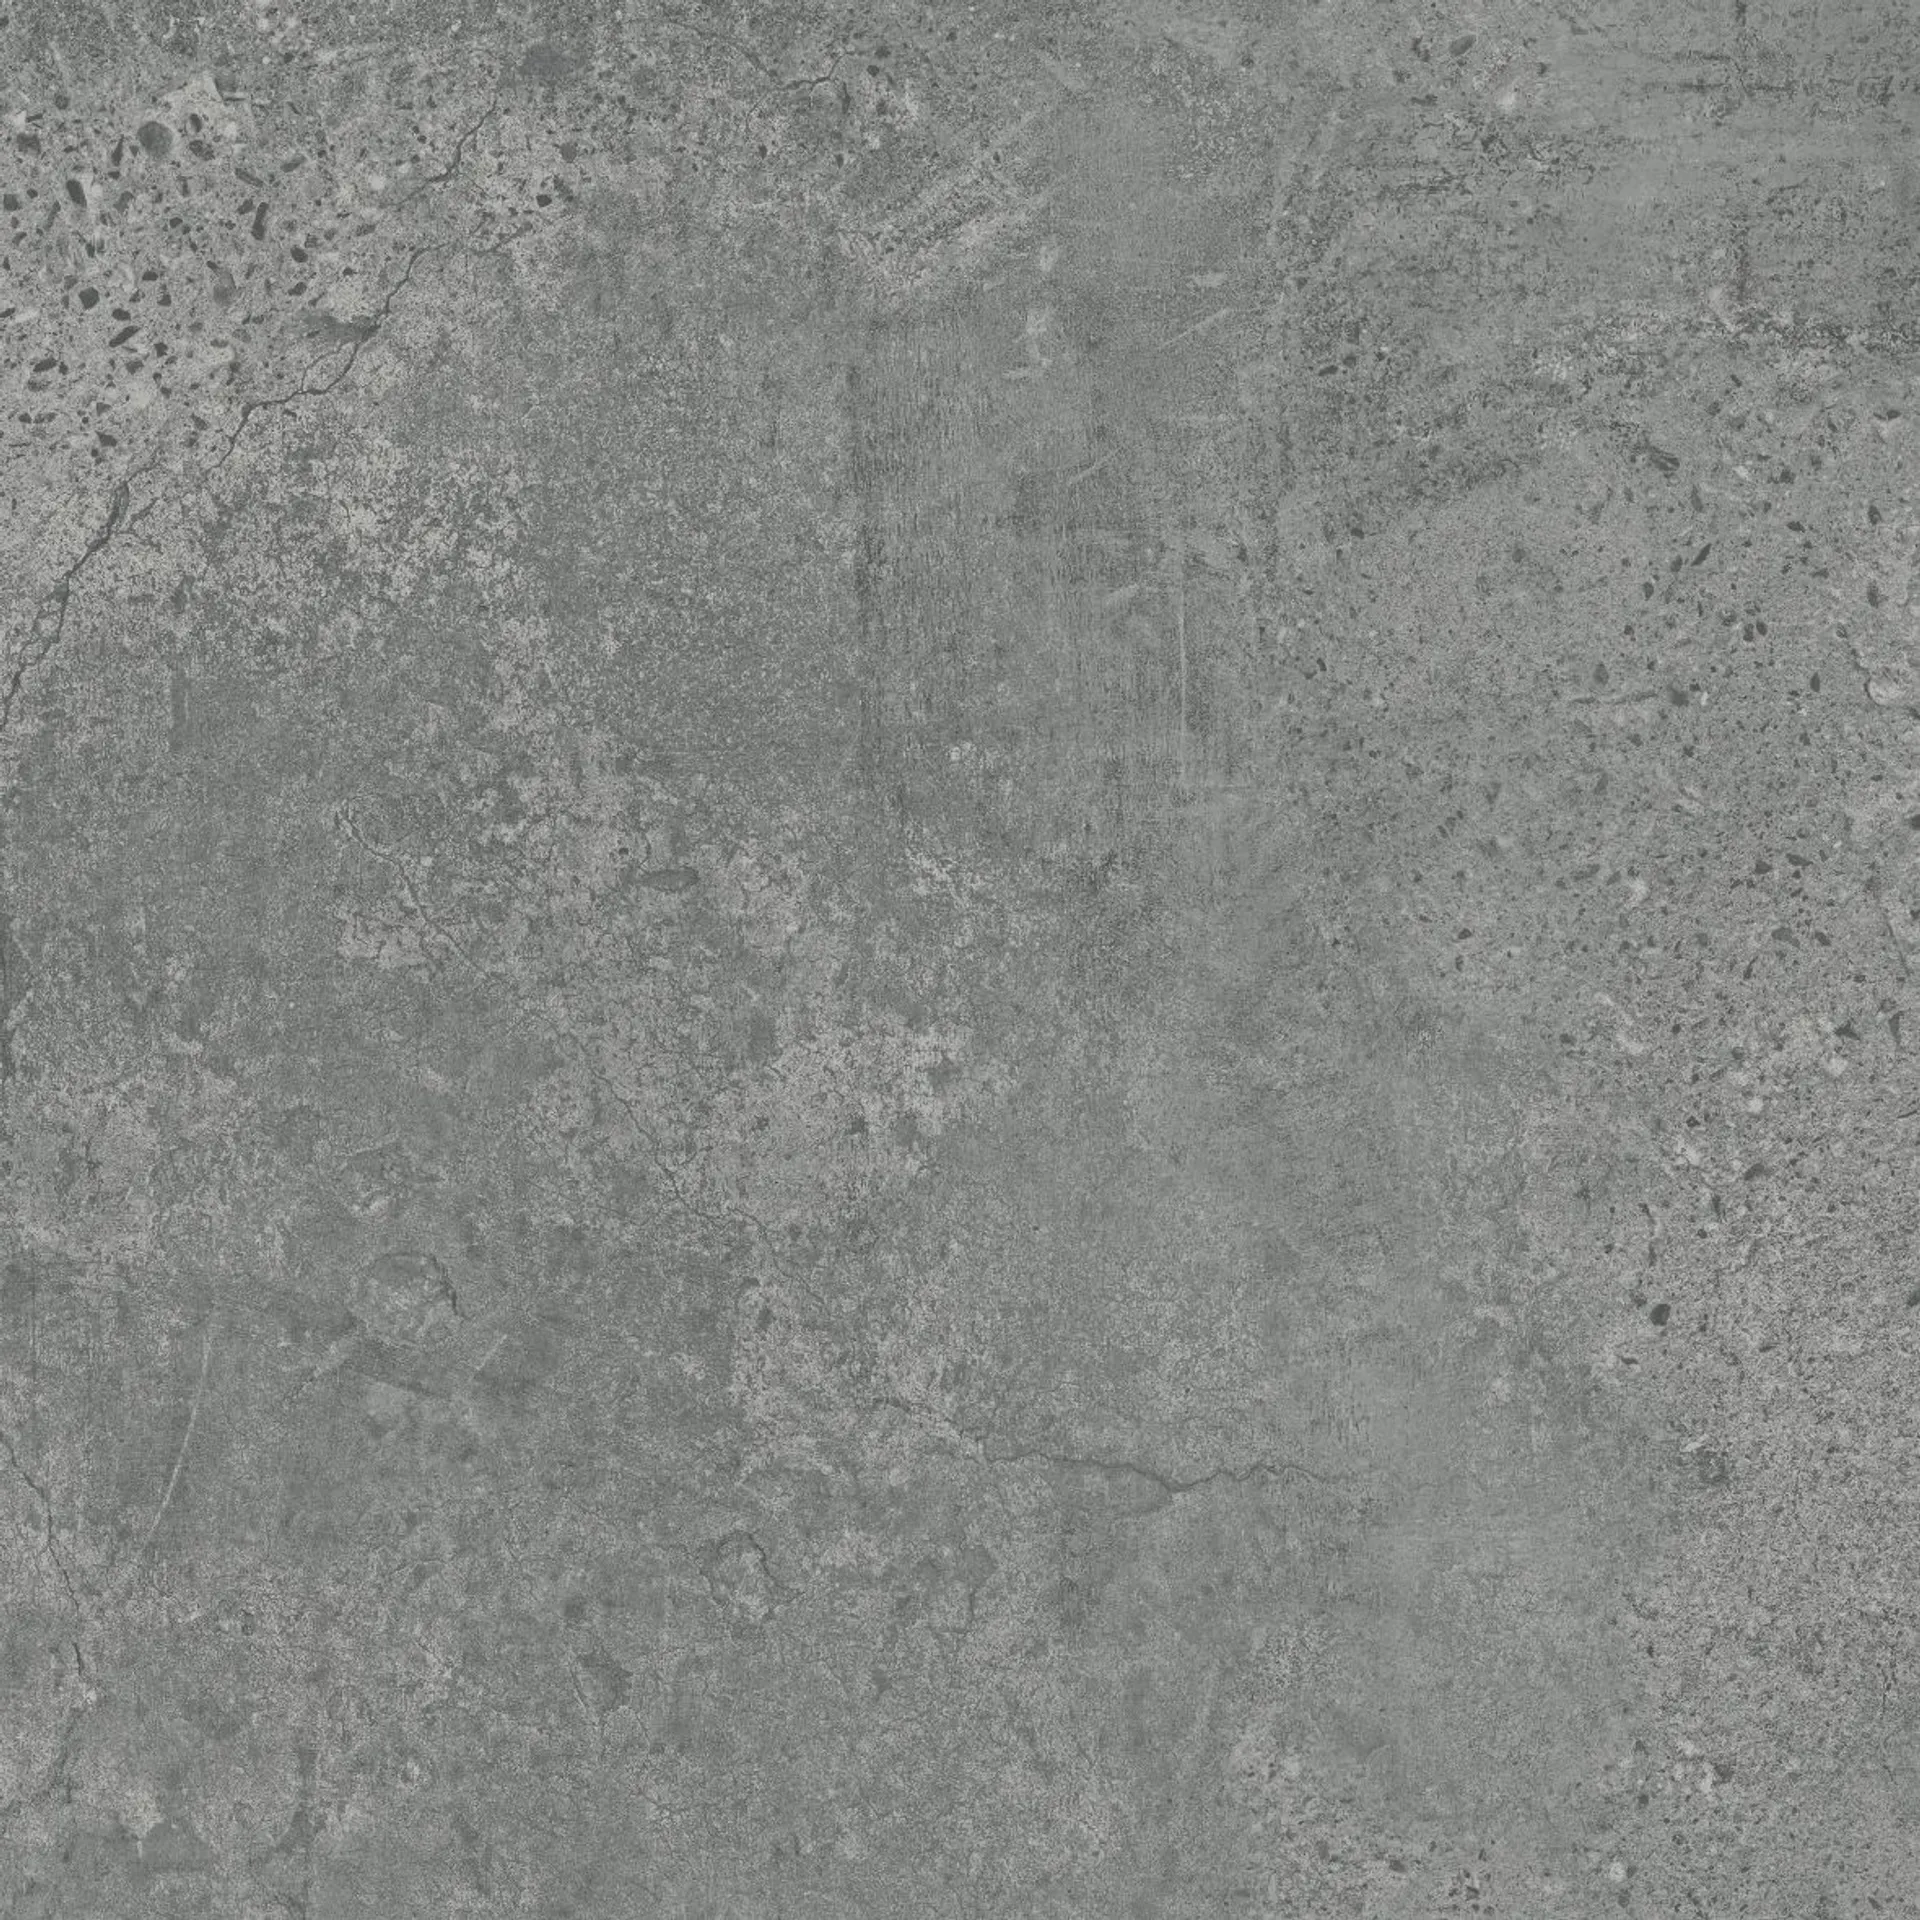 Gres tarasowo-balkonowy Newstone 2.0 grey mat rectified 59,3x59,3 Opoczno